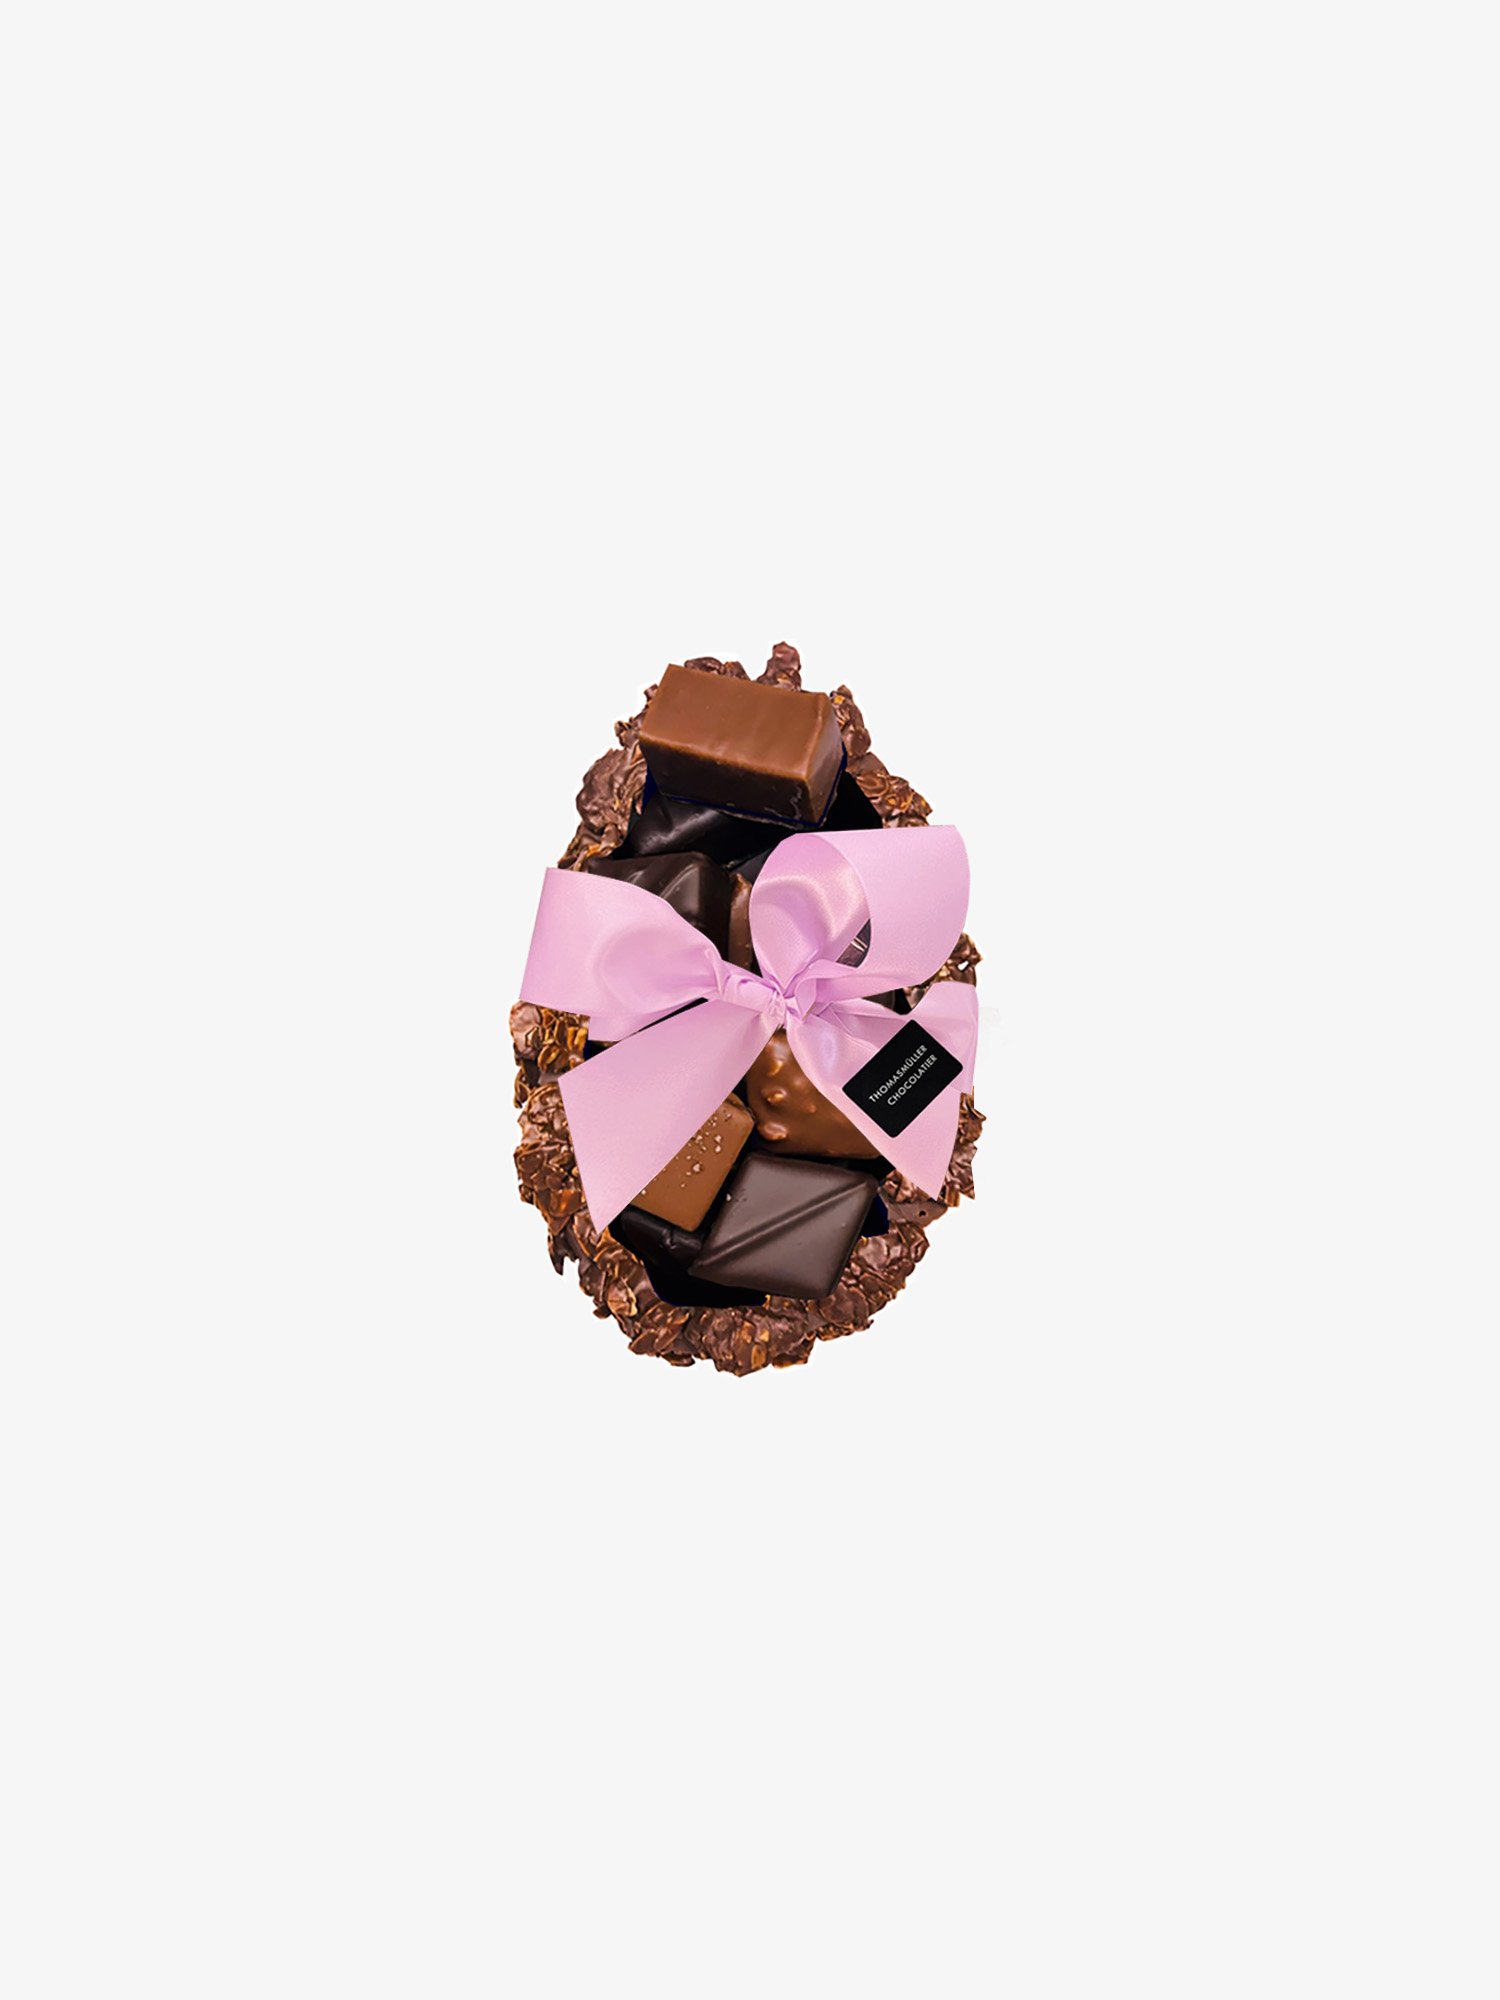 Osterei helle Schokolade online bestellen von Thomas Müller Chocolatier